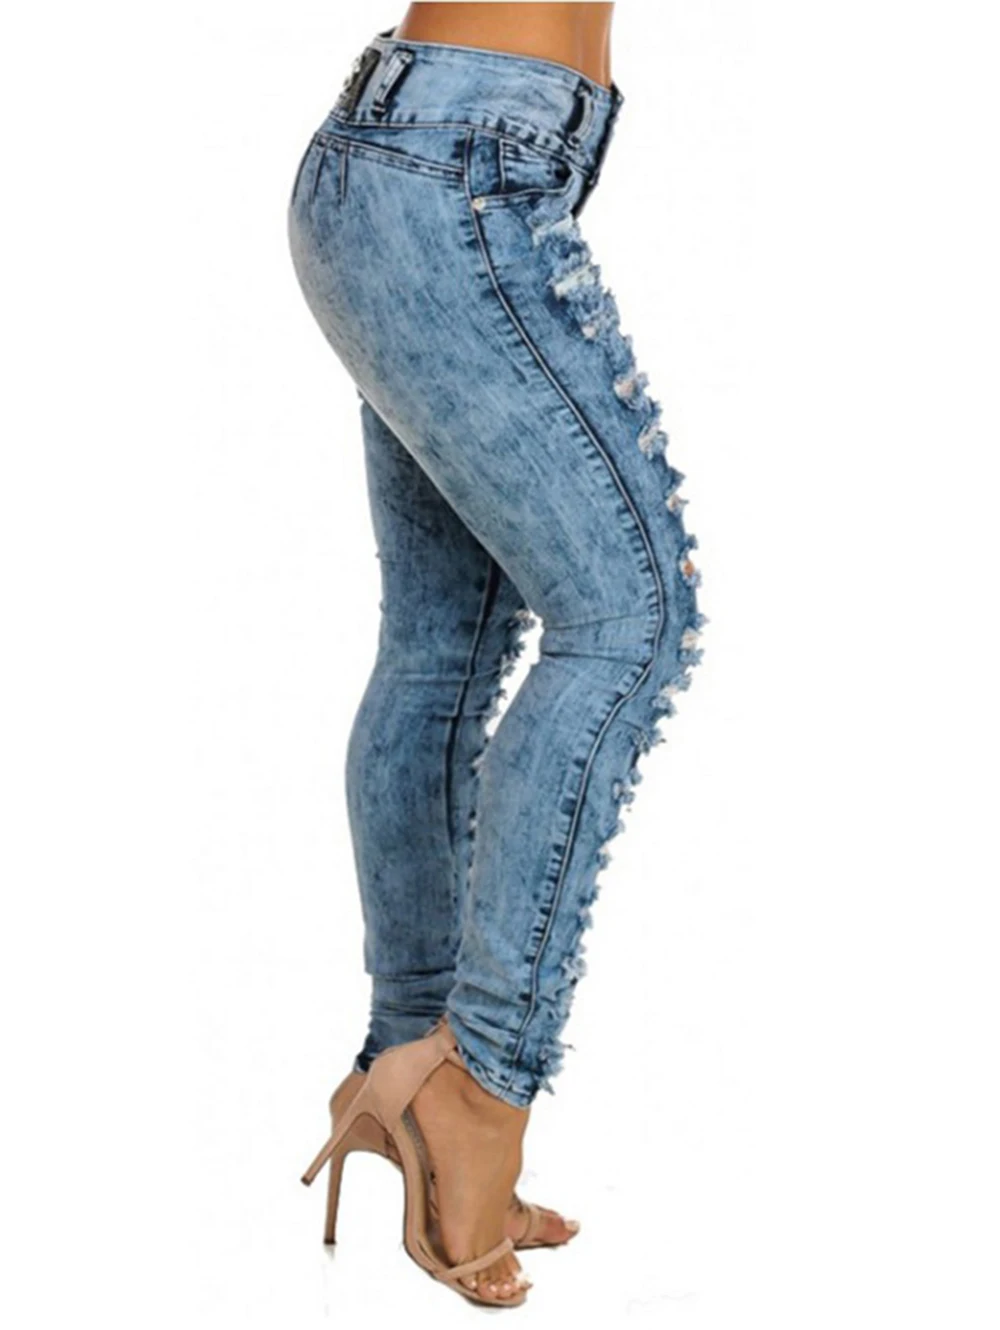 Wipalo, женские джинсы, сексуальные, высокая талия, брюки-карандаш, повседневные, синие, рваные, джинсовые штаны, для девушек, обтягивающие, длинные, тонкие, джинсы, брюки, женские штаны